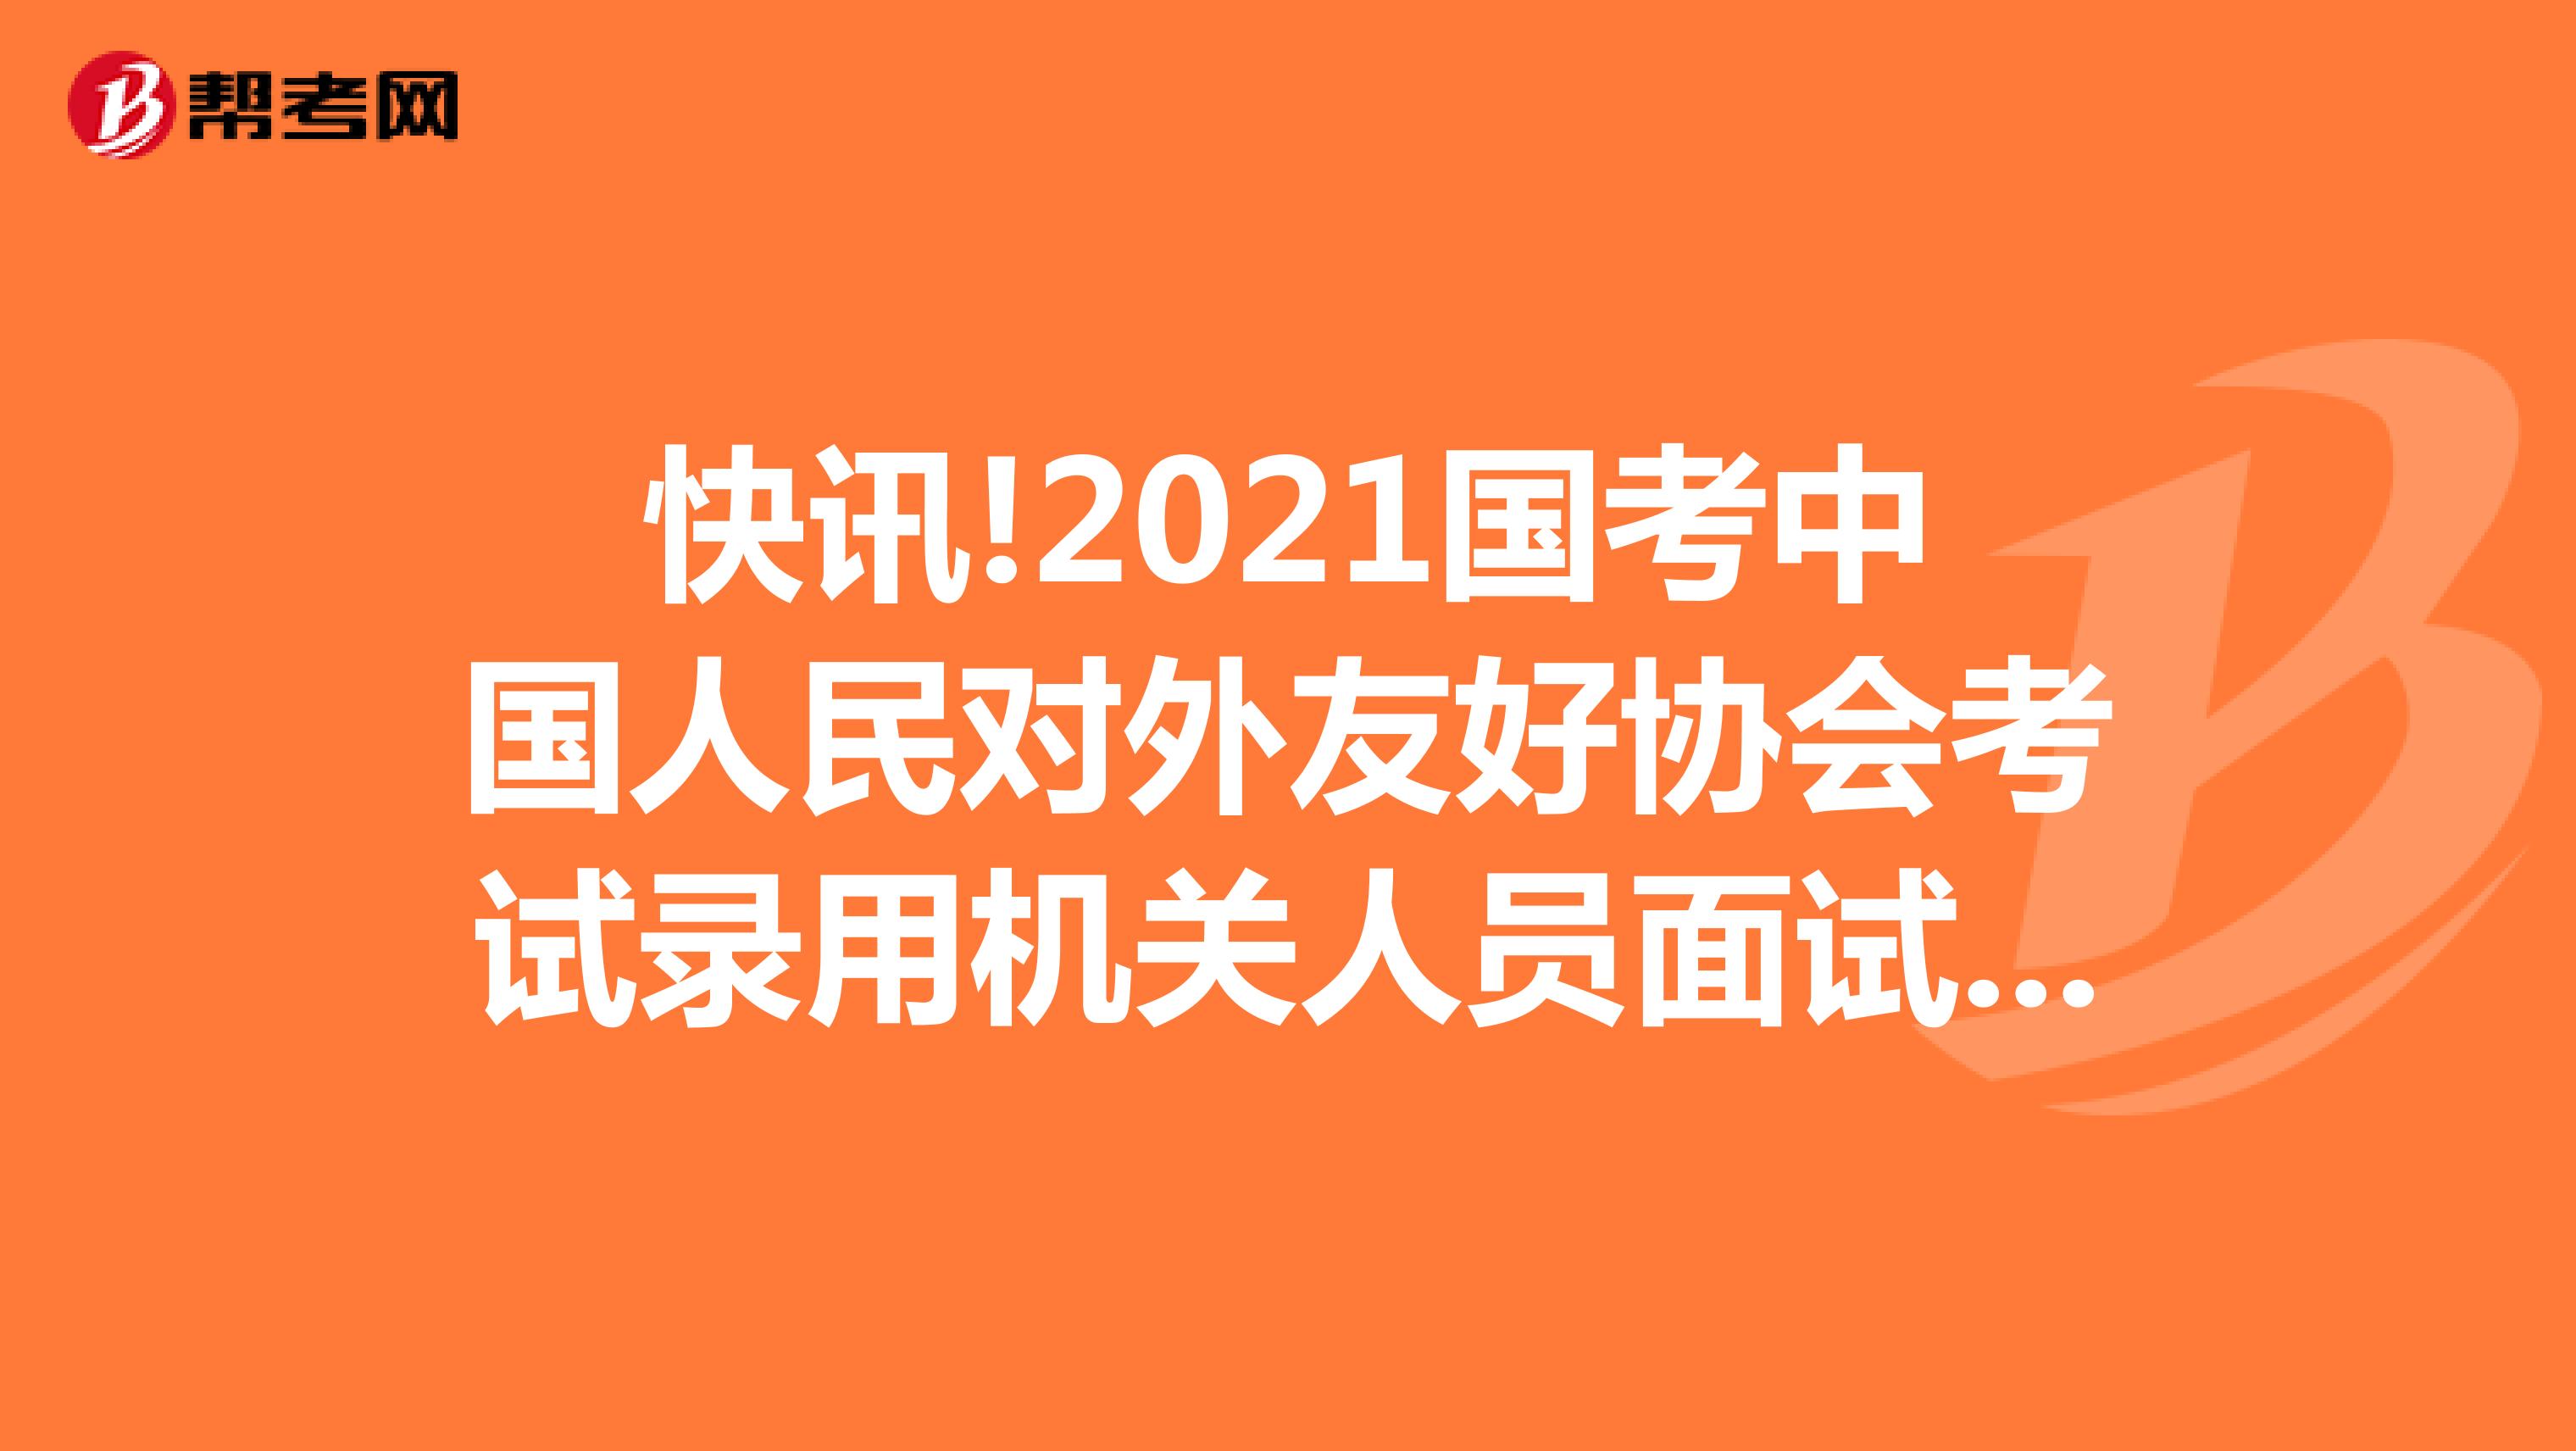 快讯!2021国考中国人民对外友好协会考试录用机关人员面试公告